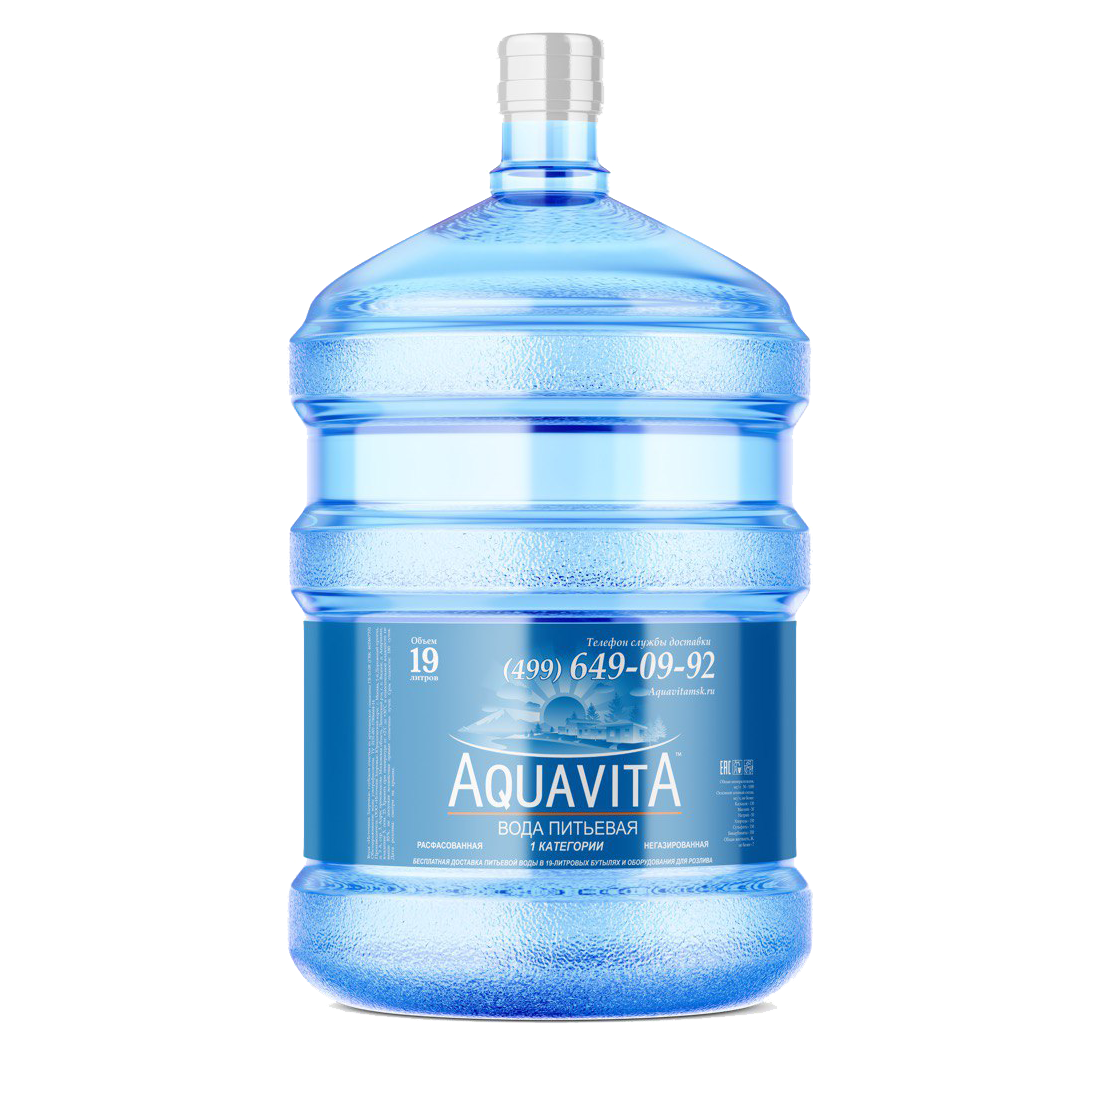 Питьевая артезианская вода "Аквавита" 19л Первой категории